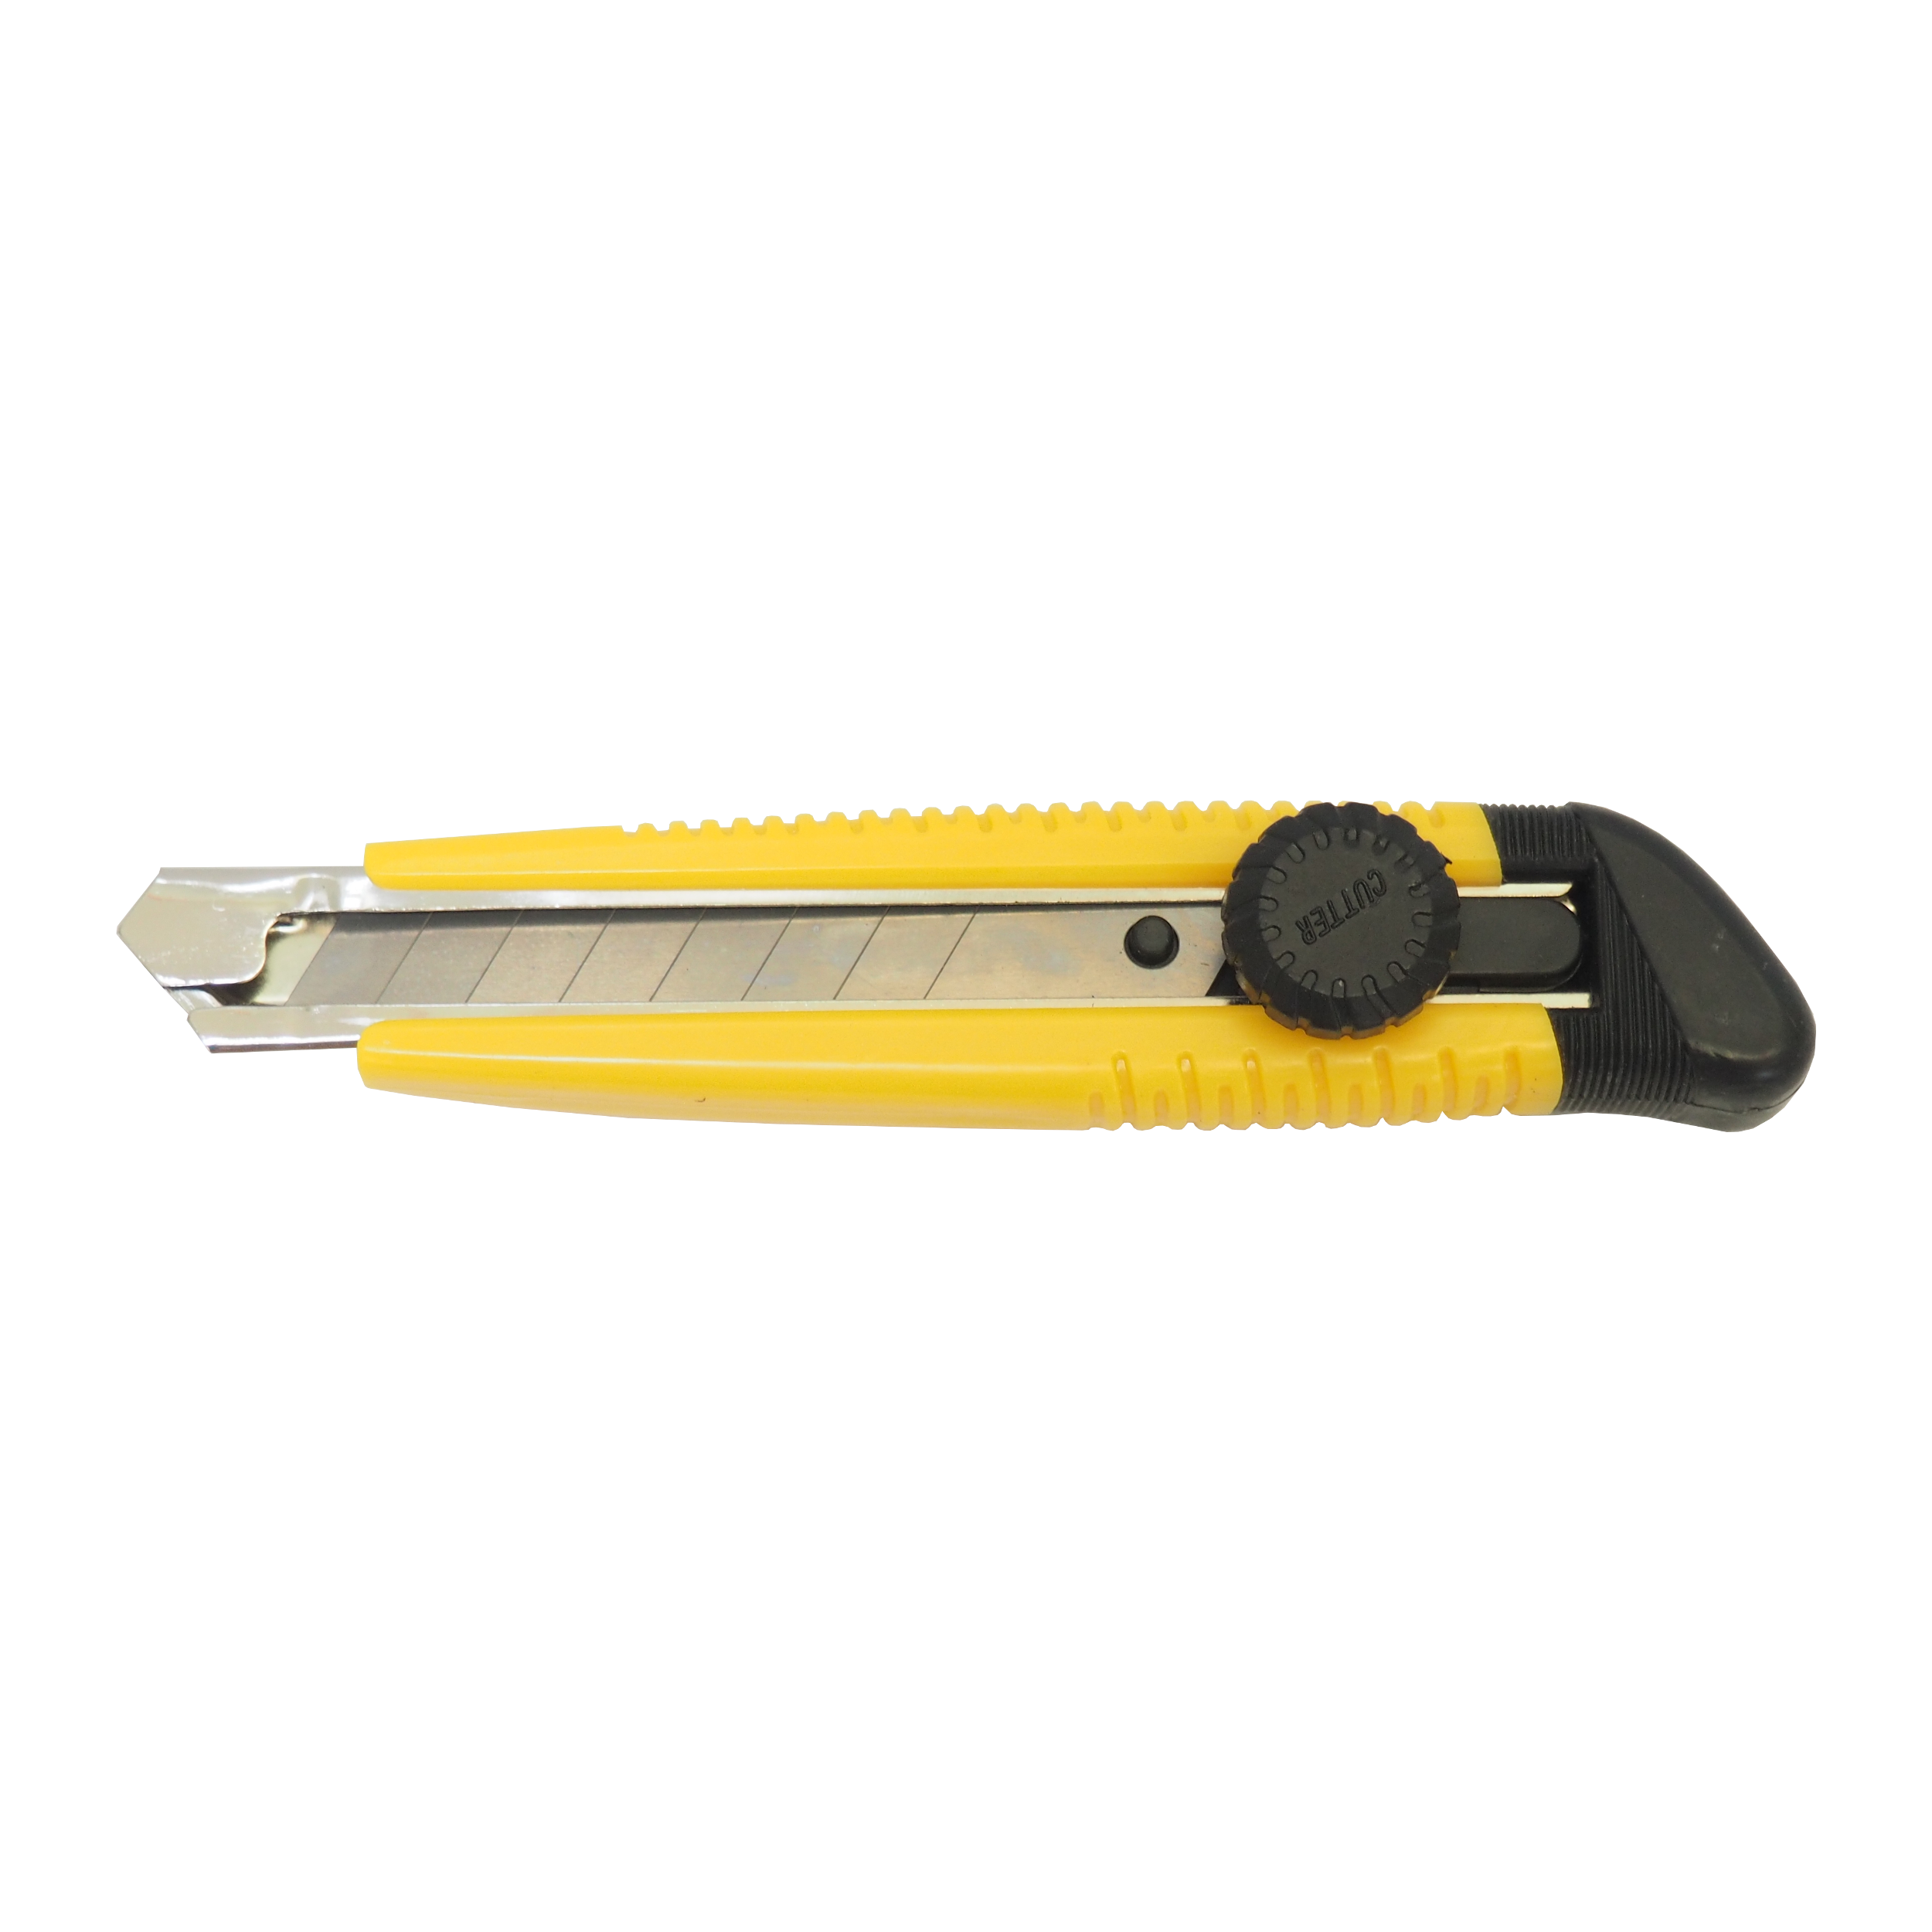 TOPTRADE nůž odlamovací, plastový, s kovovou výztuhou a šroubovou aretací, Leader L-17, 18mm, profi 0.07 Kg TOP Sklad4 200200 55